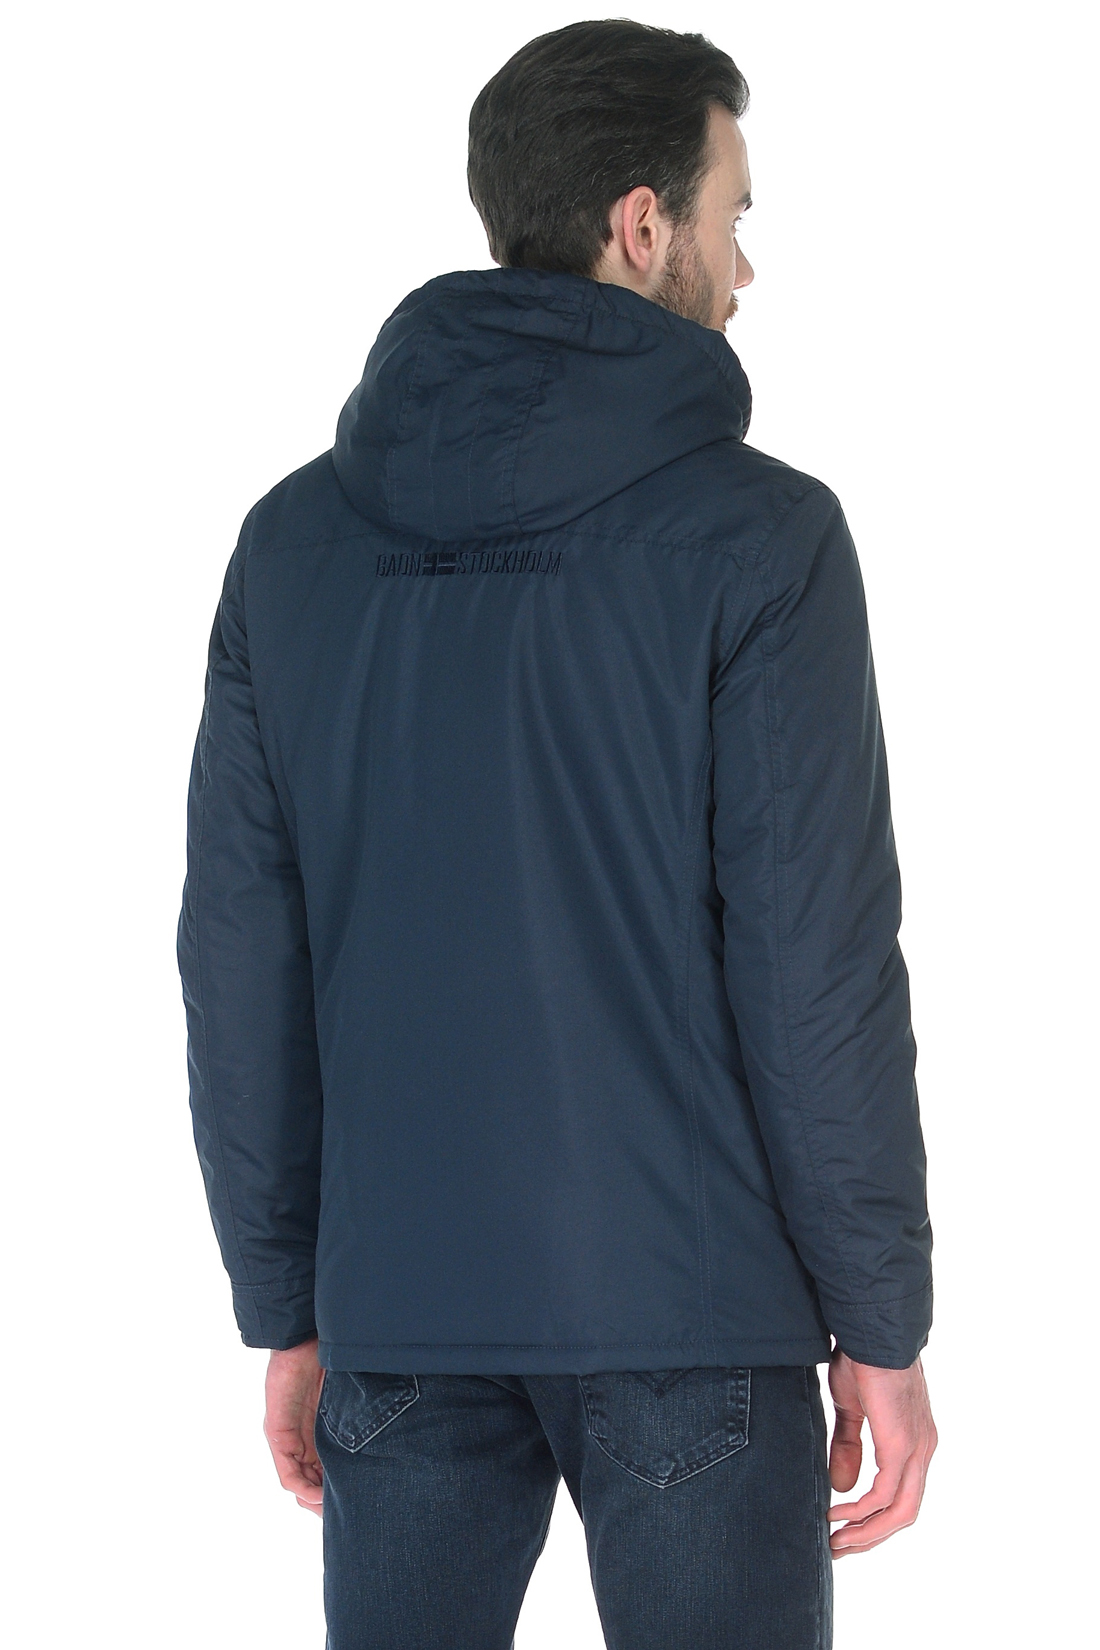 Куртка с отделкой из кожи (арт. baon B538022), размер S, цвет синий Куртка с отделкой из кожи (арт. baon B538022) - фото 2